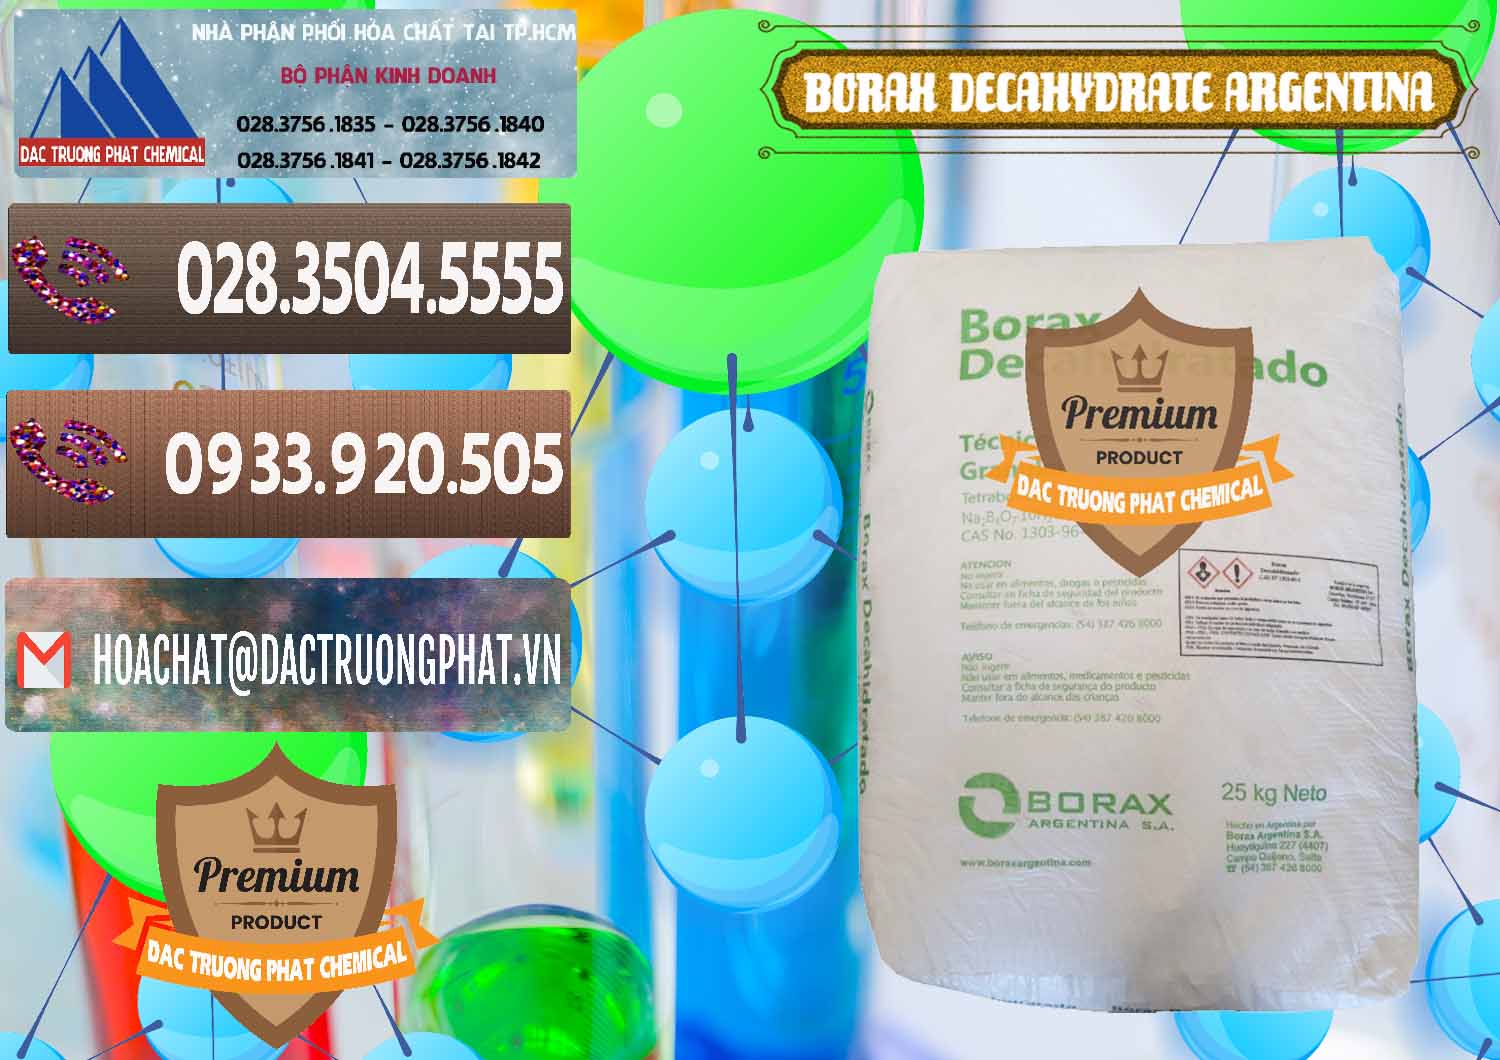 Nơi bán _ phân phối Borax Decahydrate Argentina - 0446 - Nhà cung cấp & phân phối hóa chất tại TP.HCM - hoachatviet.net